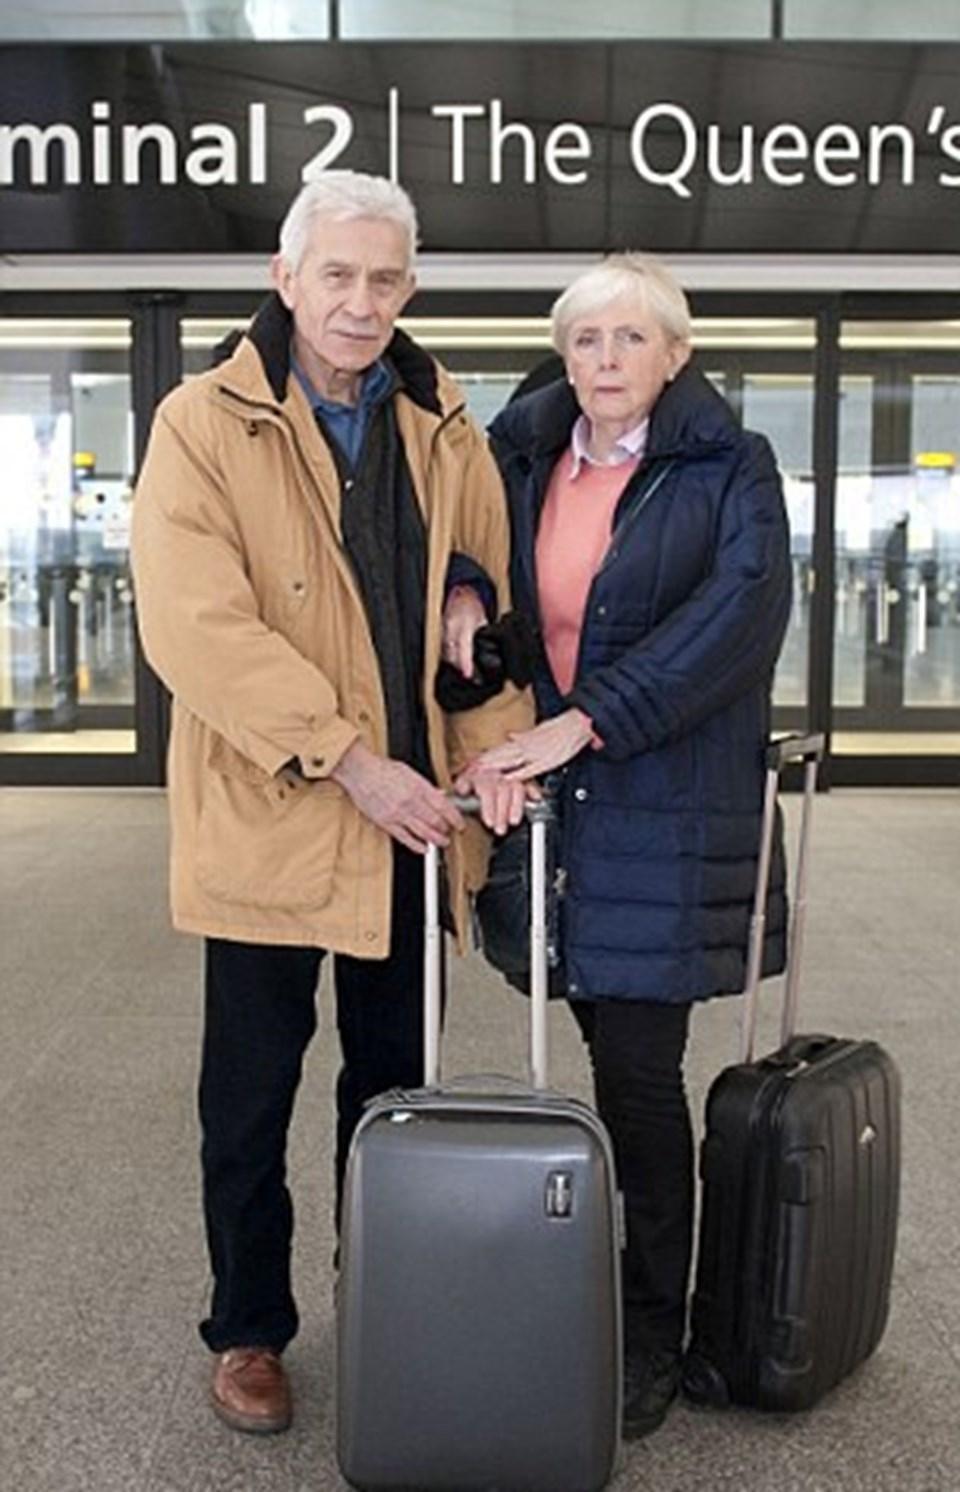 Havaalanında yaşayan çifte yardım yağdı